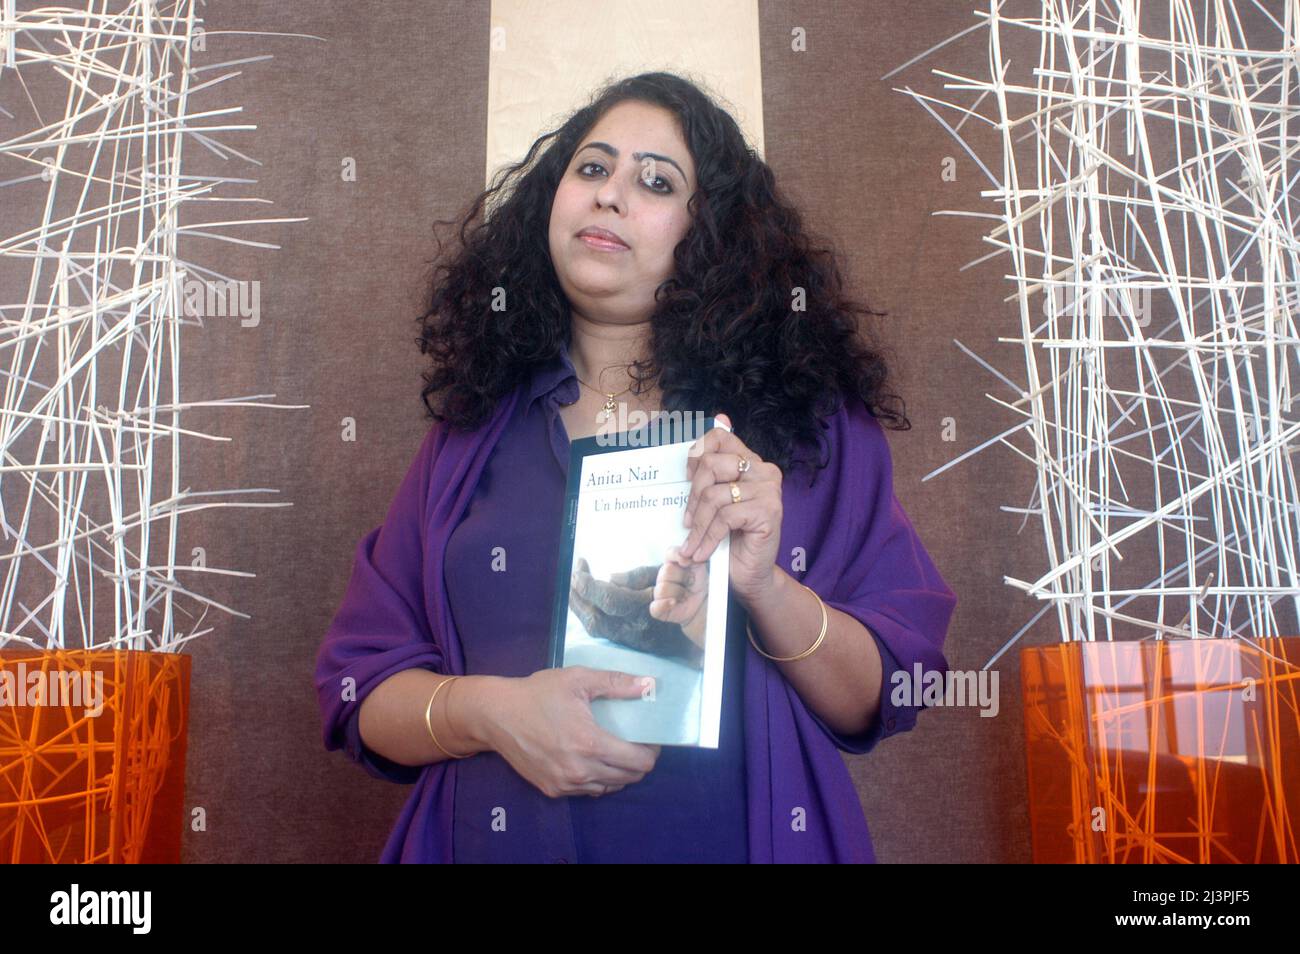 Anita Nair, Indian writer Stock Photo